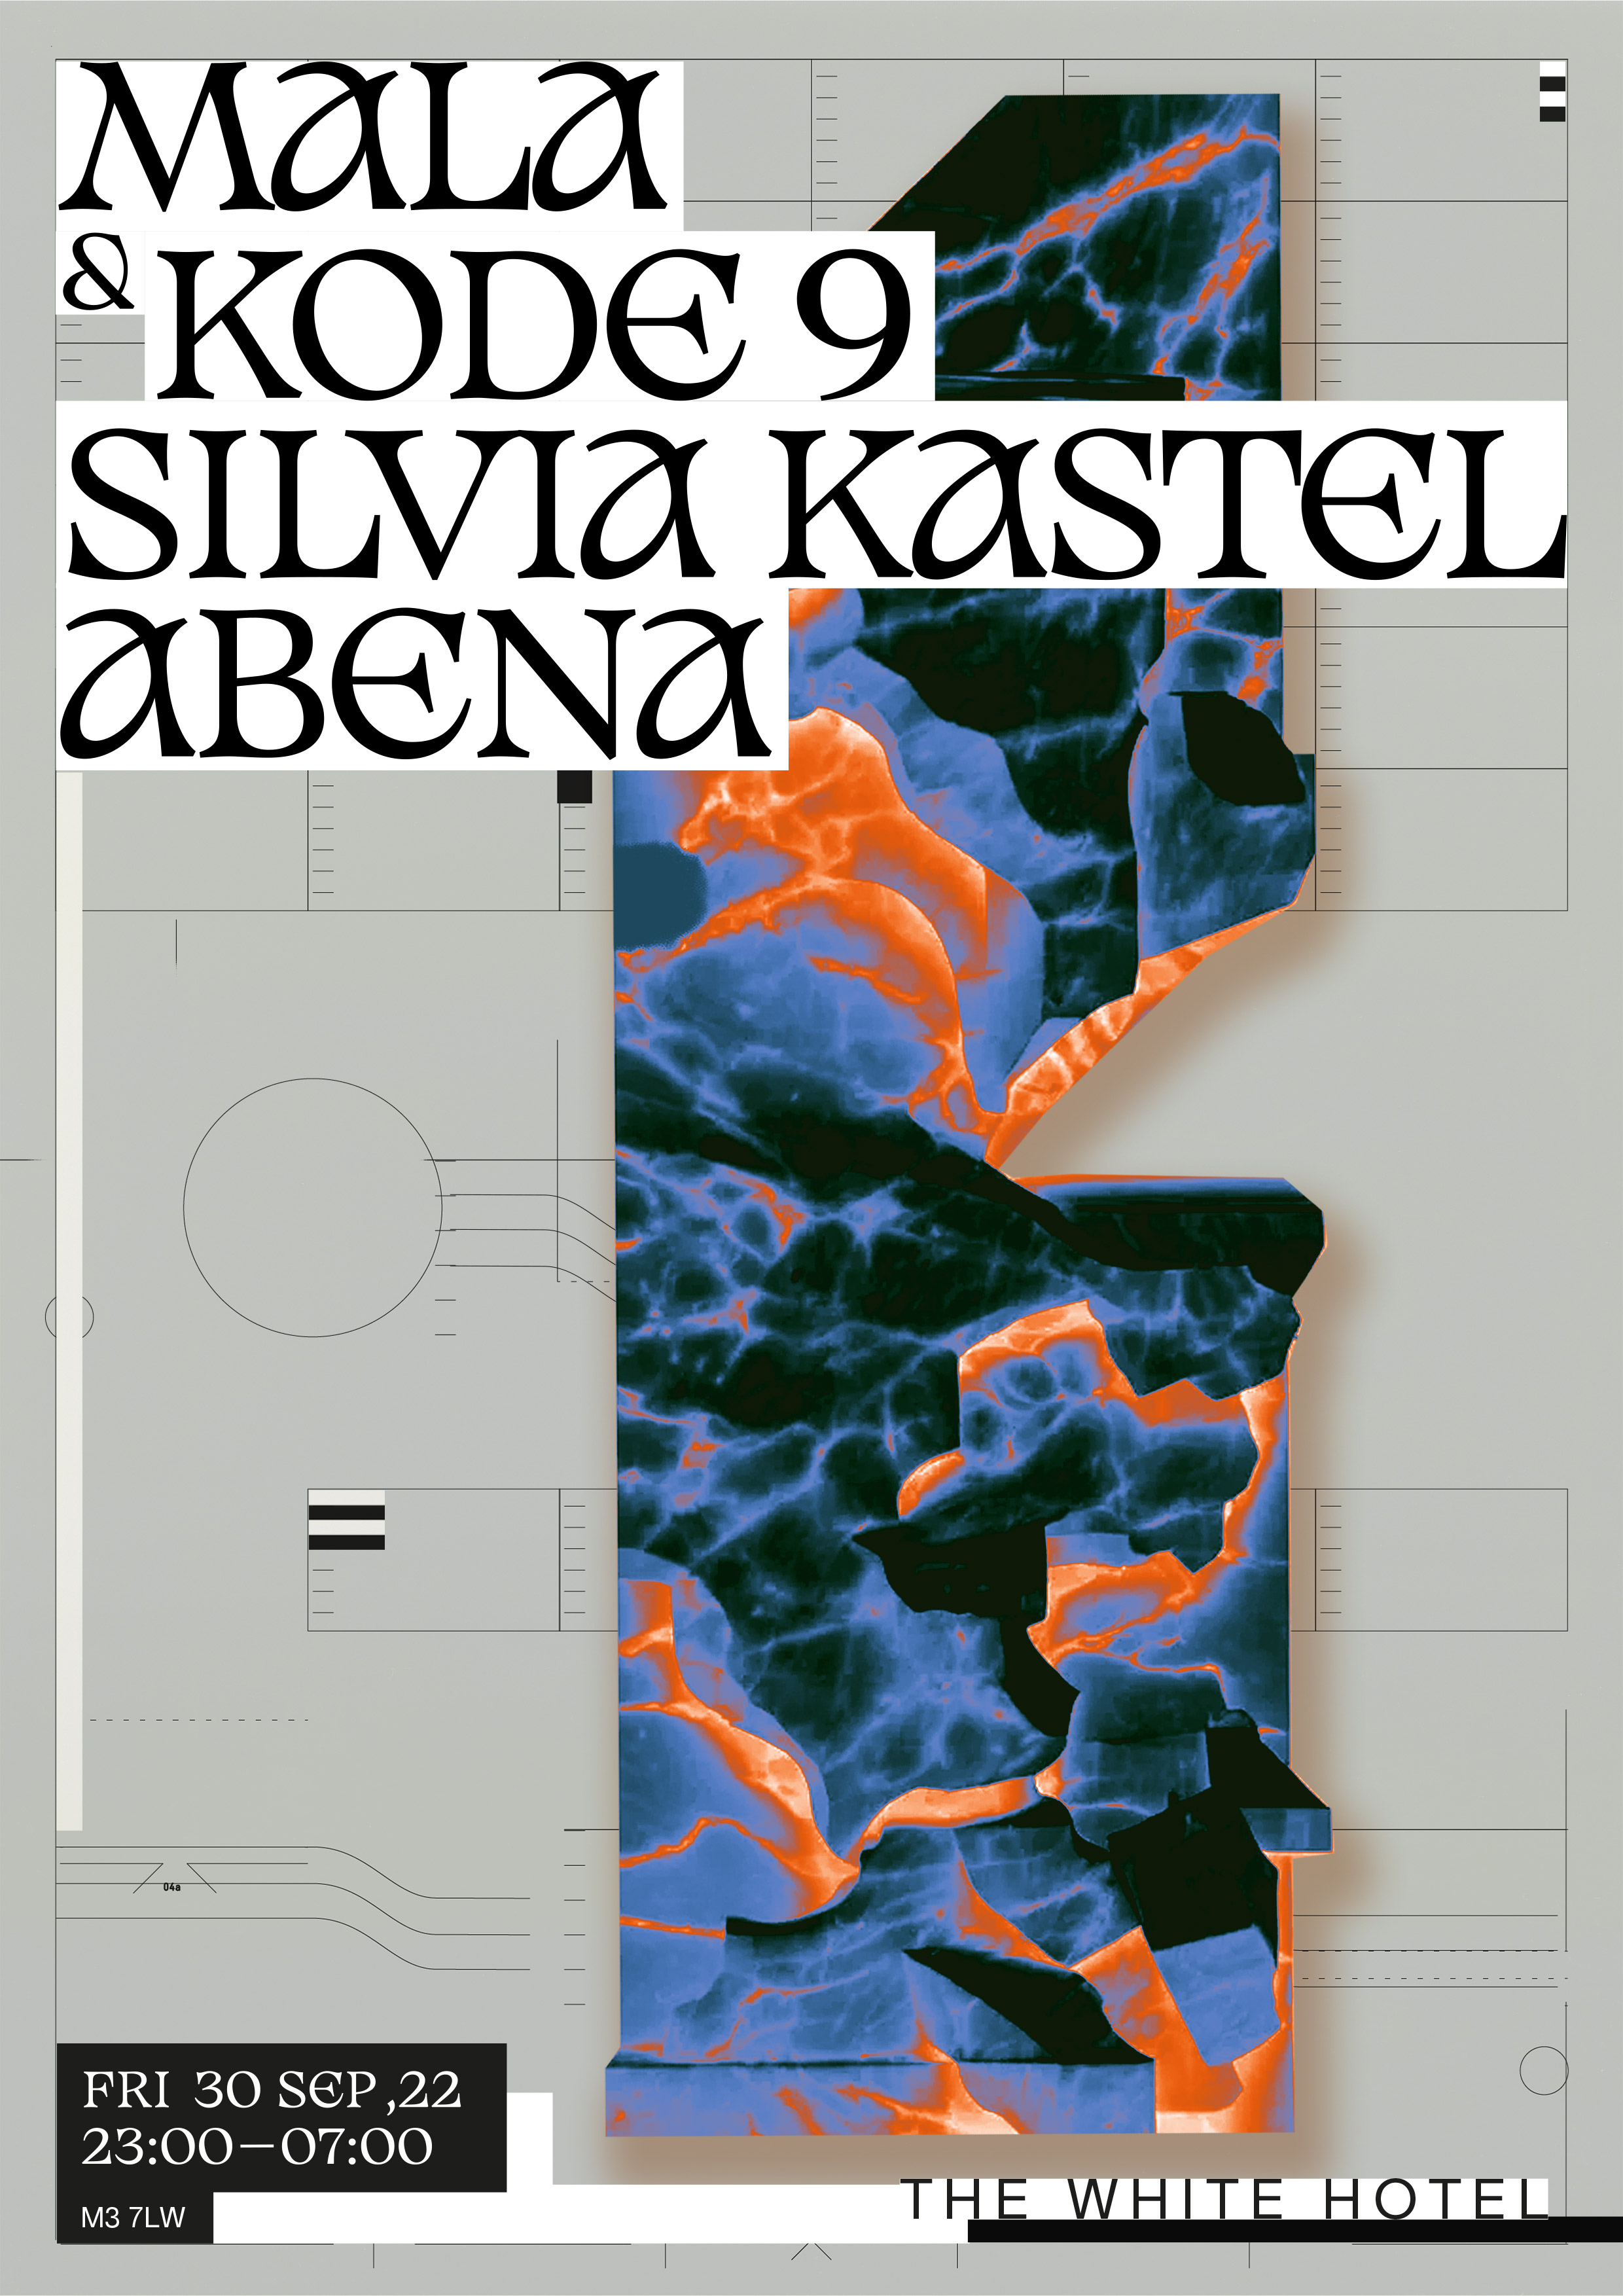 Mala / Kode 9 / Silvia Kastel / Abena - Flyer back